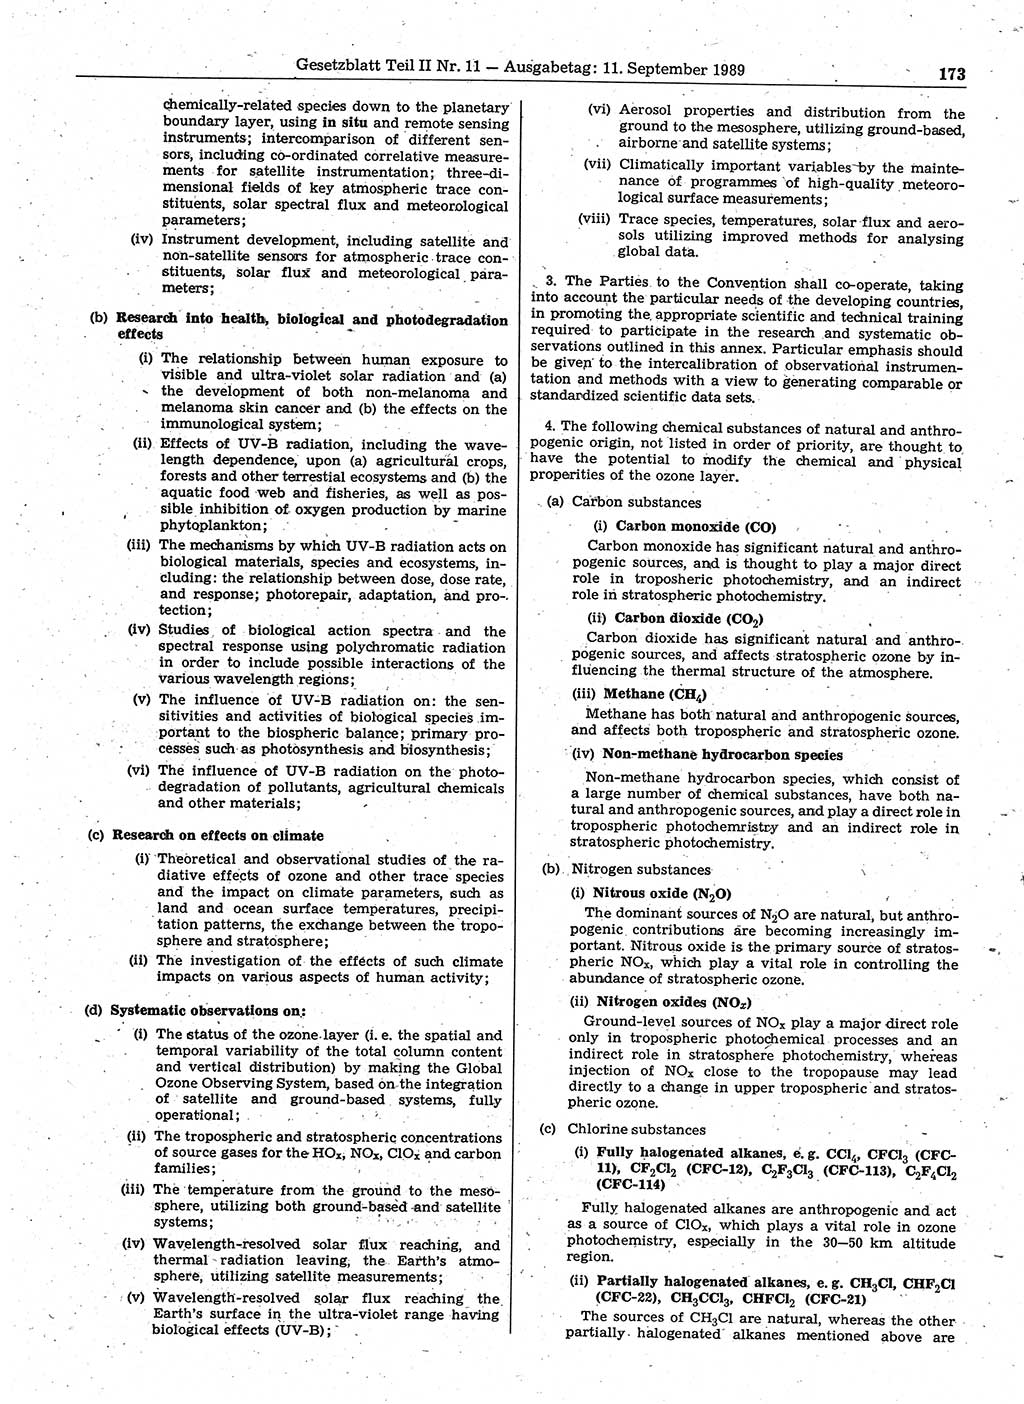 Gesetzblatt (GBl.) der Deutschen Demokratischen Republik (DDR) Teil ⅠⅠ 1989, Seite 173 (GBl. DDR ⅠⅠ 1989, S. 173)